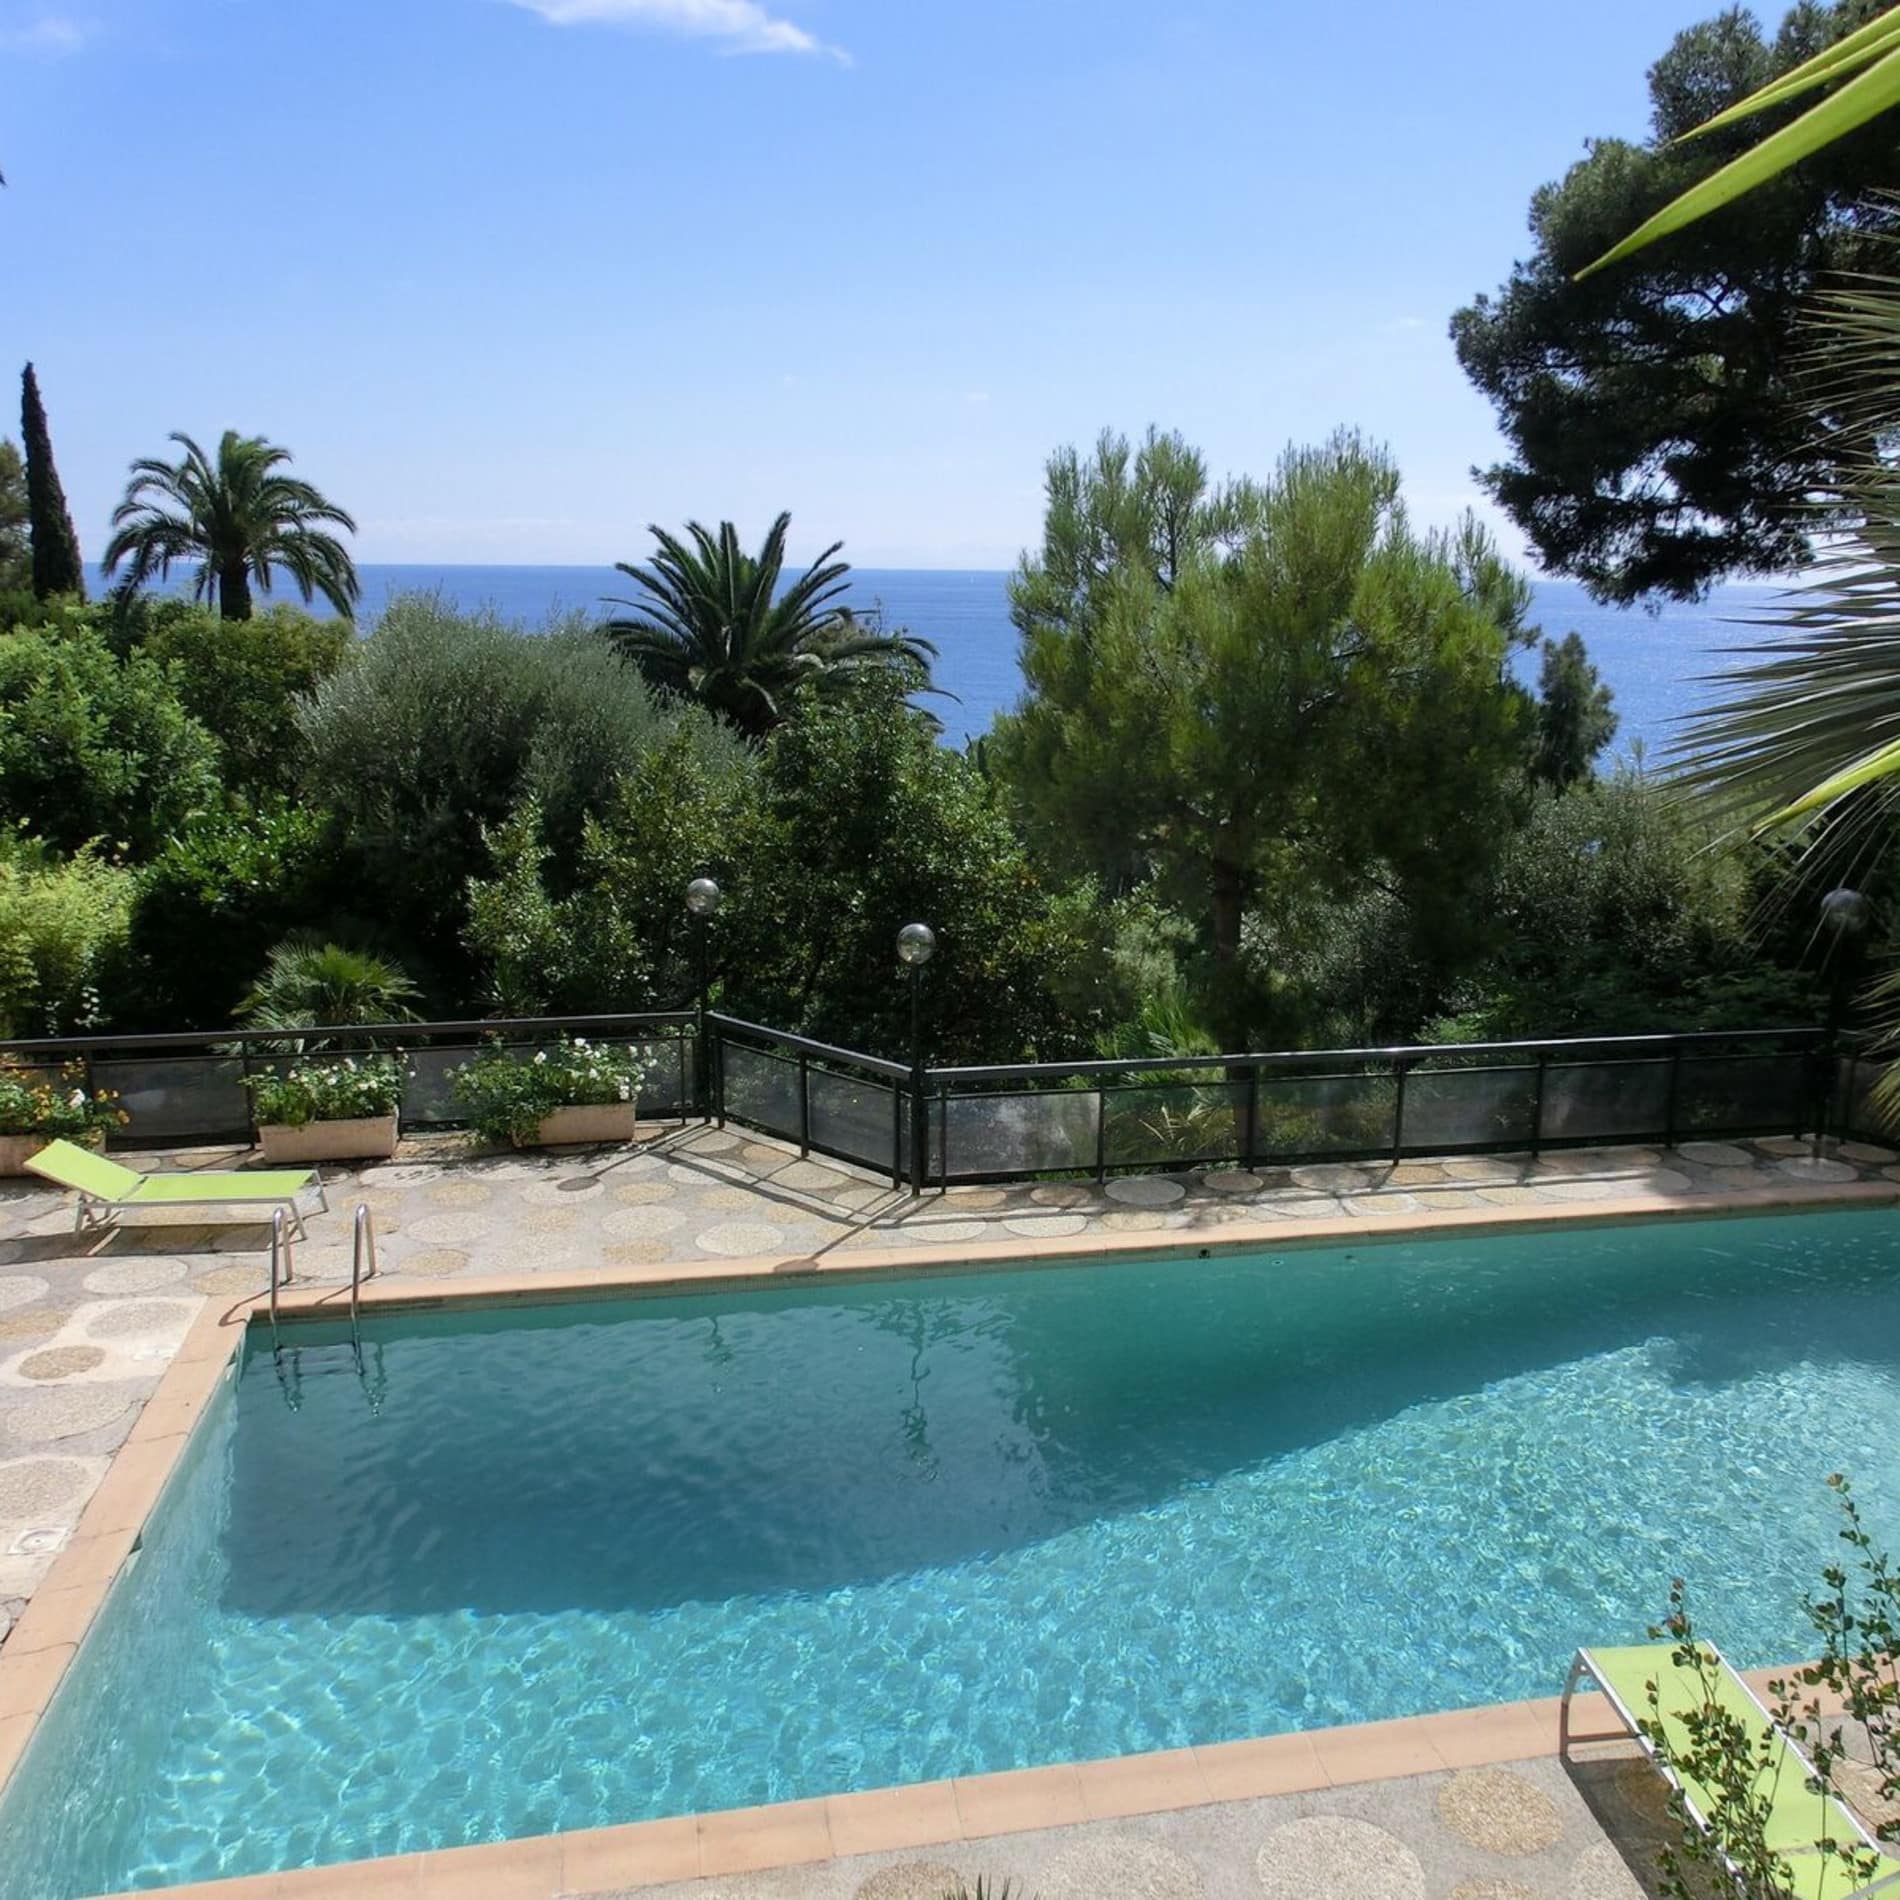 Ferienhaus in der Provence mit Pool, umgeben von Palmen und weiterem Grün, und Blick übers Meer